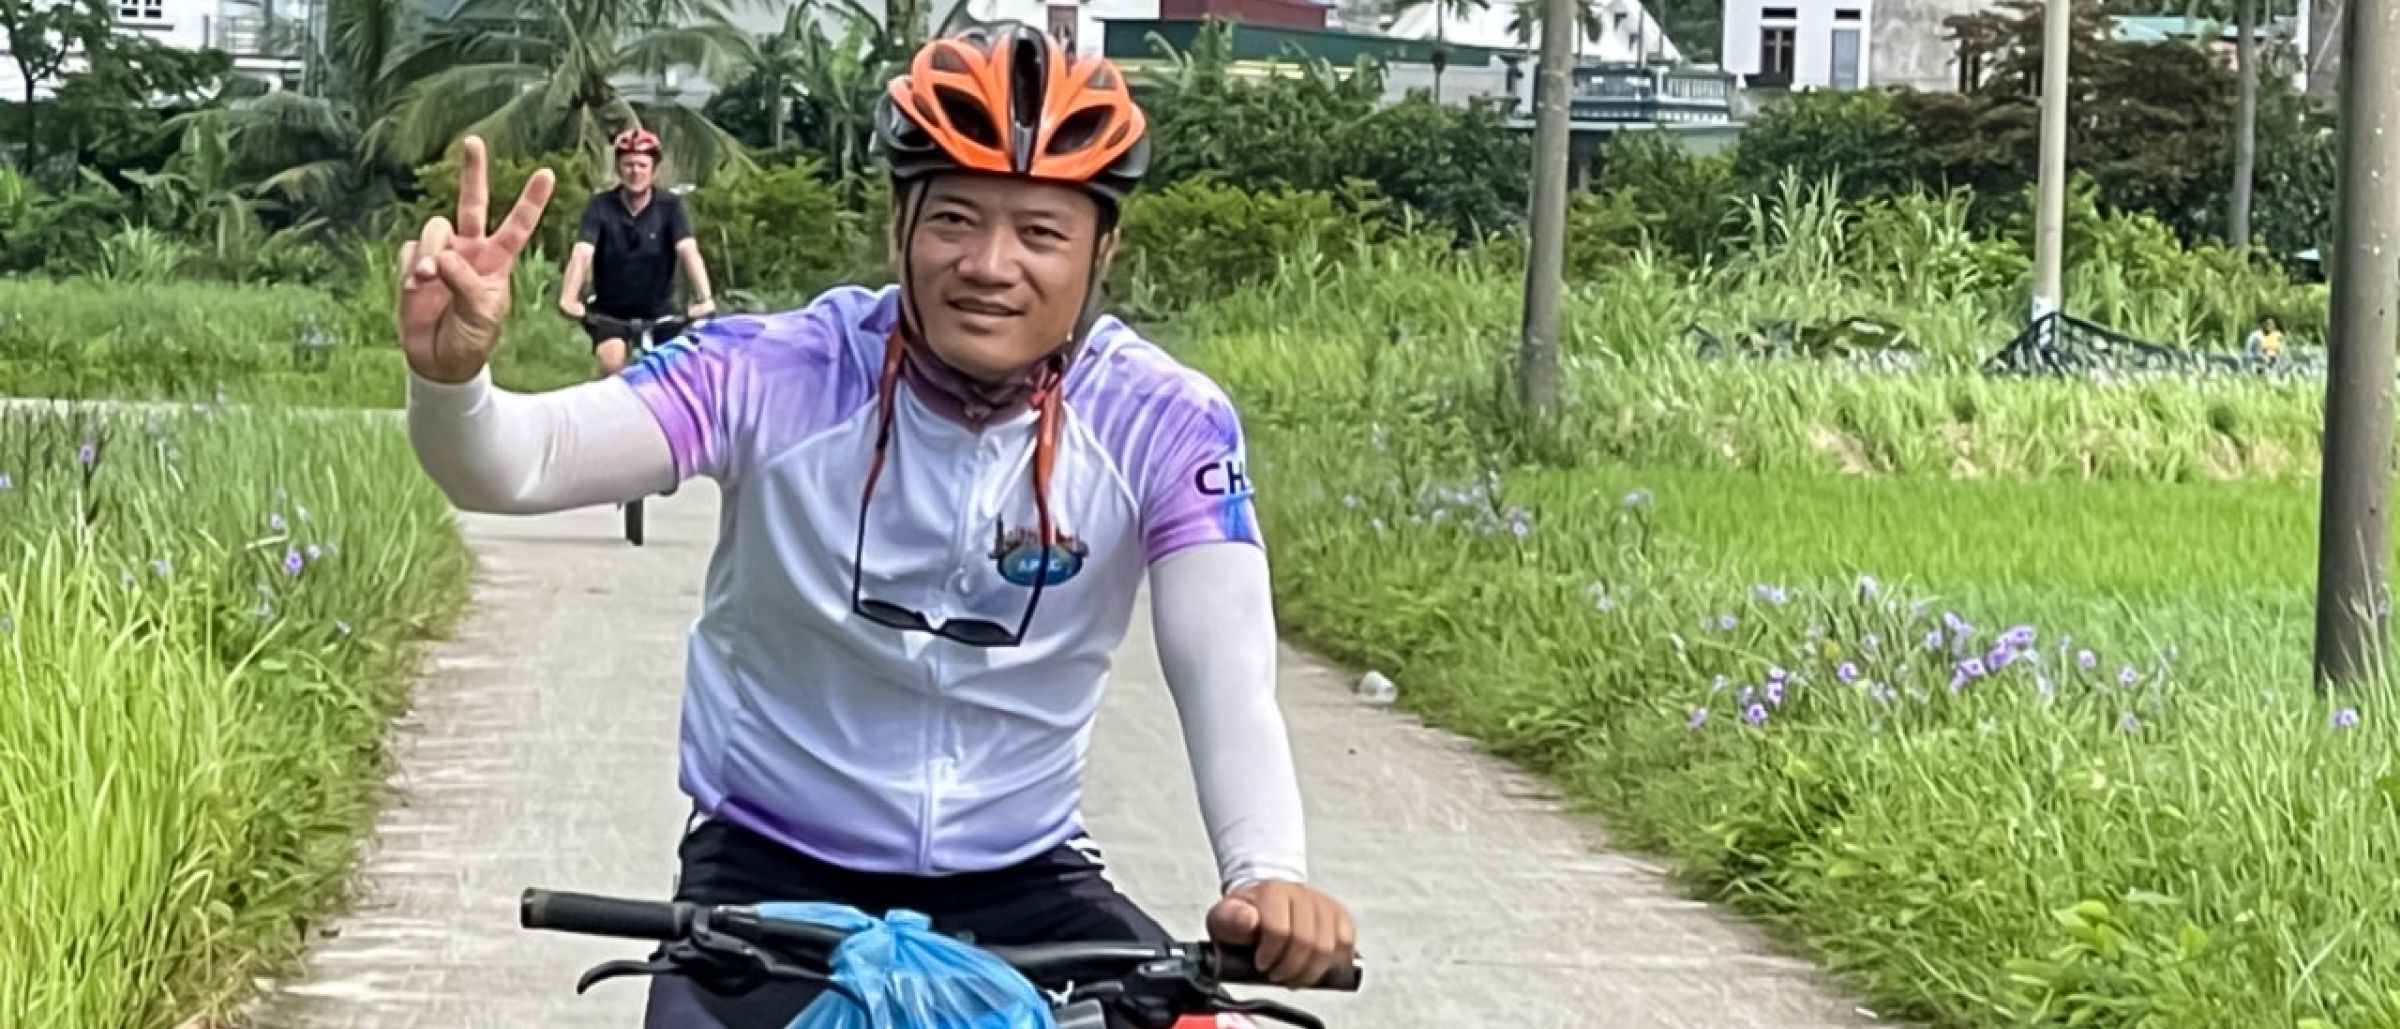 Mit dem Tourenguide auf Radreise durch Vietnam